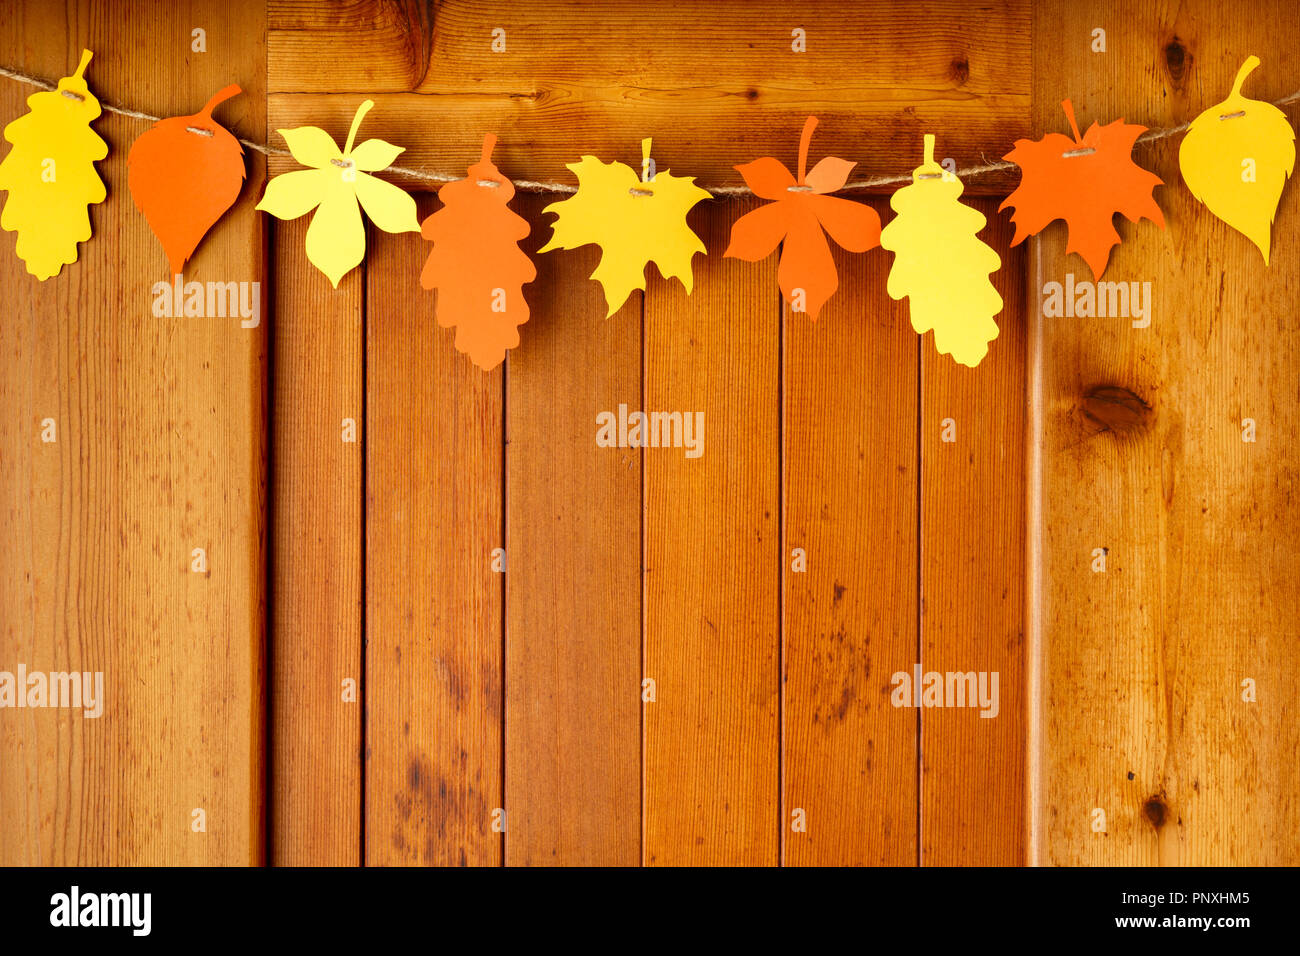 Einfachen, rustikalen Landhausstil Thanksgiving home Dekorationen Papier Handwerk Girlande banner Buntes Herbstlaub auf Holz Hintergrund Stockfoto